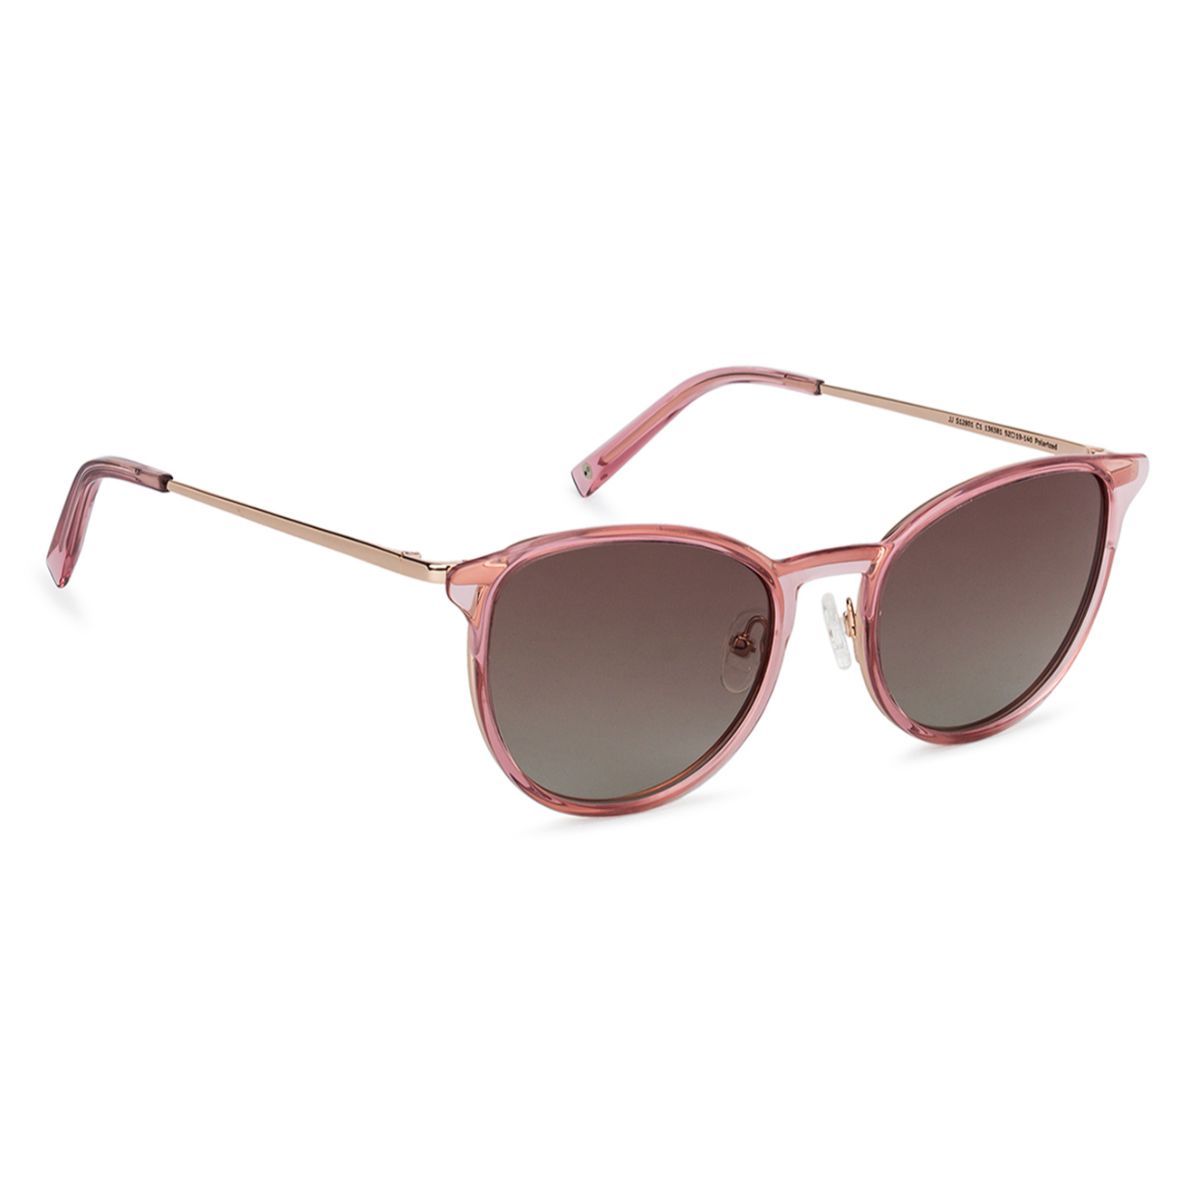 Wayfarer Sunglasses - Lens Size: 52 mm price in UAE | Noon UAE | kanbkam